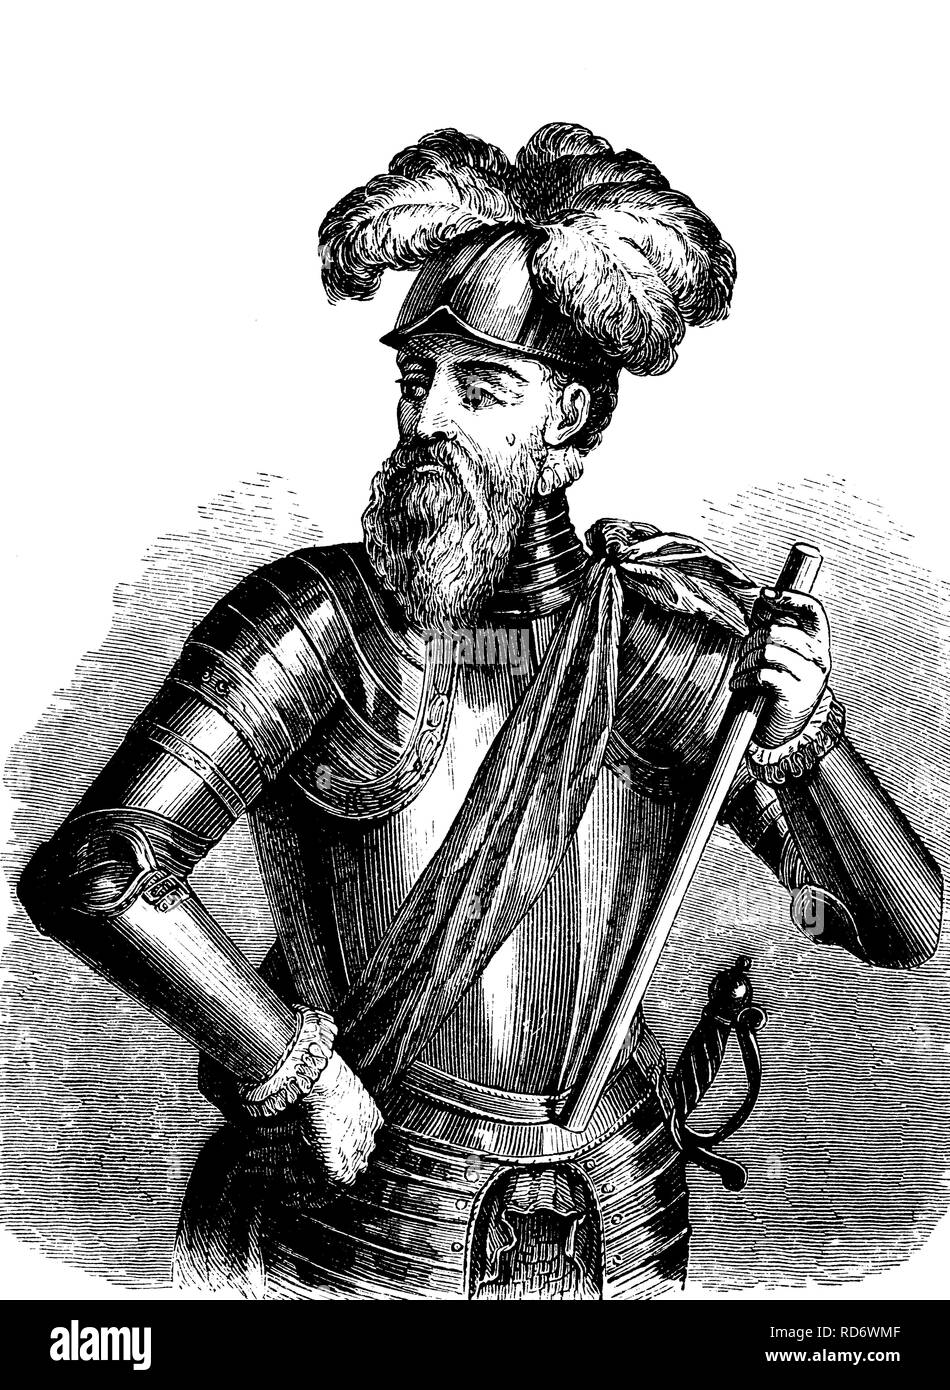 Francisco Pizarro González, 1476 - 1541, le conquistador espagnol qui a conquis le royaume des Incas, gravure sur bois de 1880 Banque D'Images